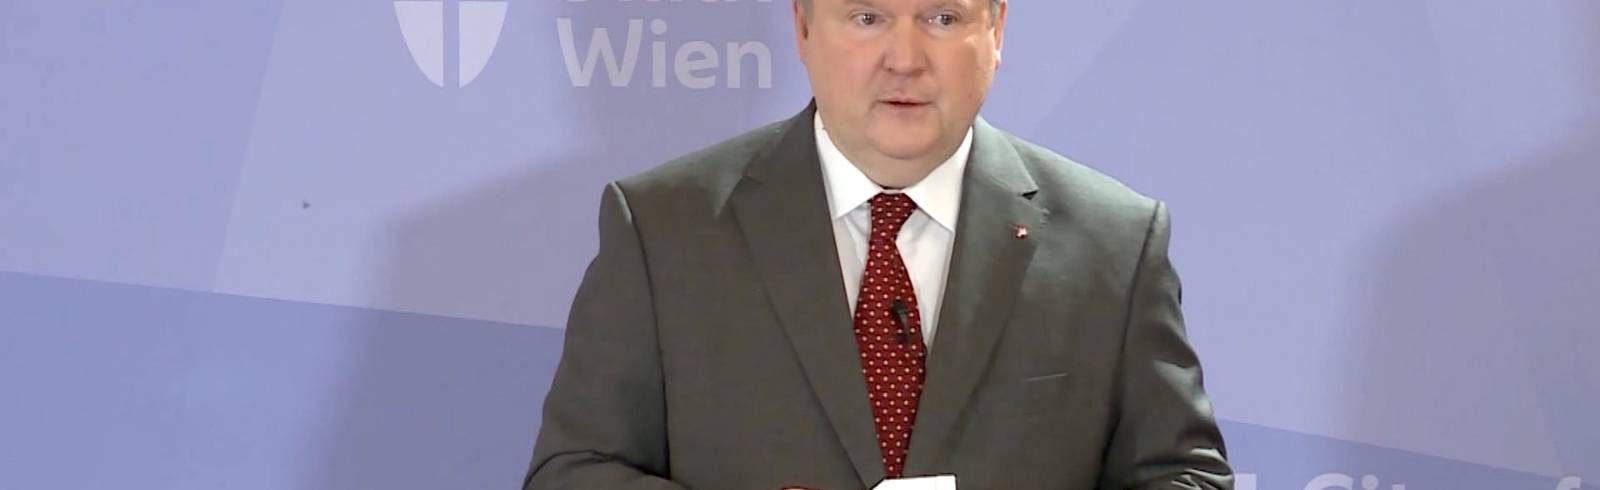 SPÖ lädt wieder zu Parteitag